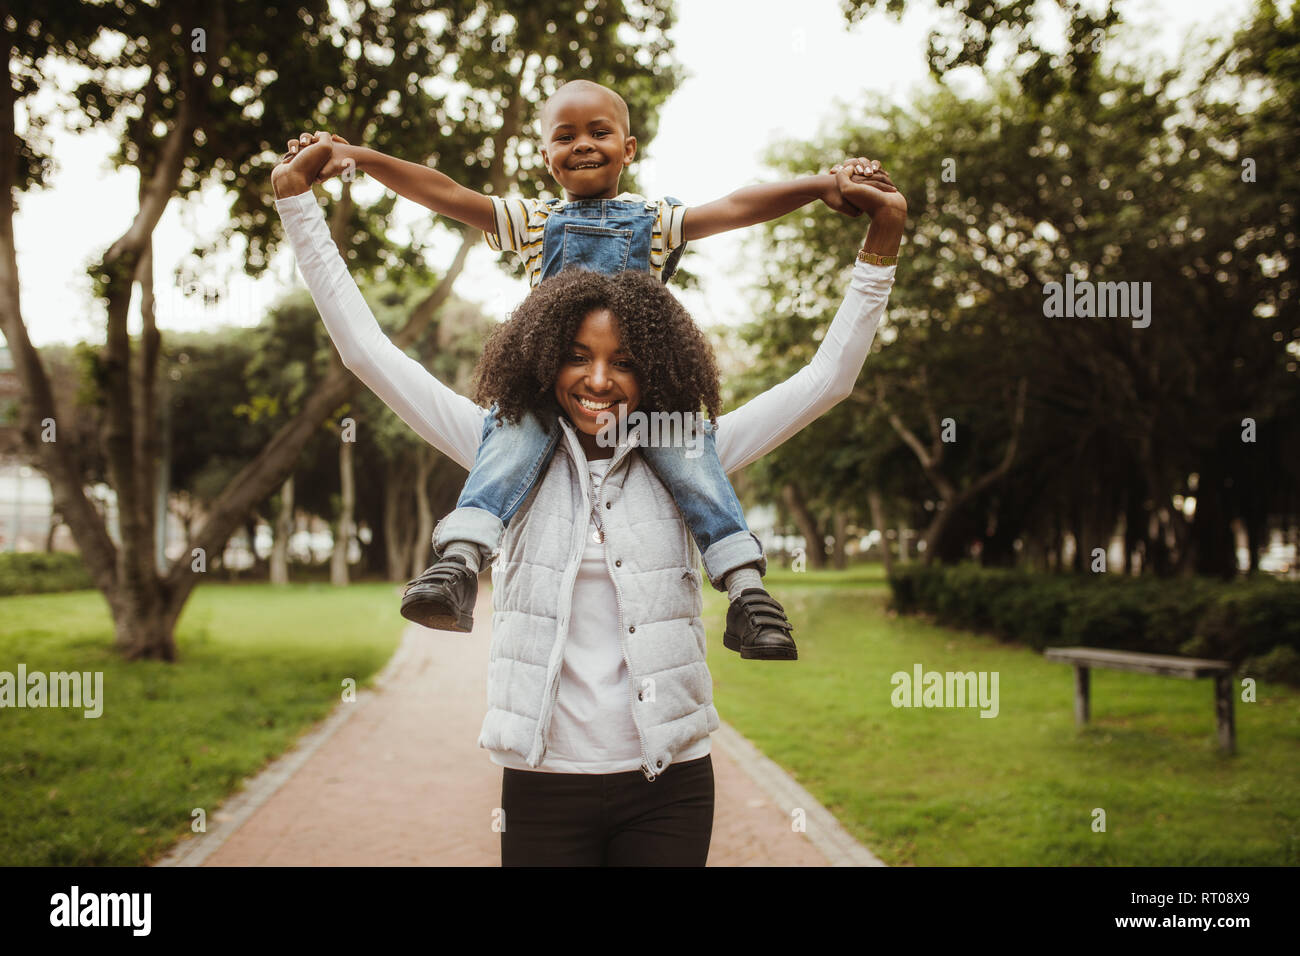 Glückliche Mutter und Sohn ein piggyback Ride auf ihren Schultern im Park. Afrikanische Frau, die seine Jungen auf ihre Schultern beim Gehen in einen Park. Stockfoto